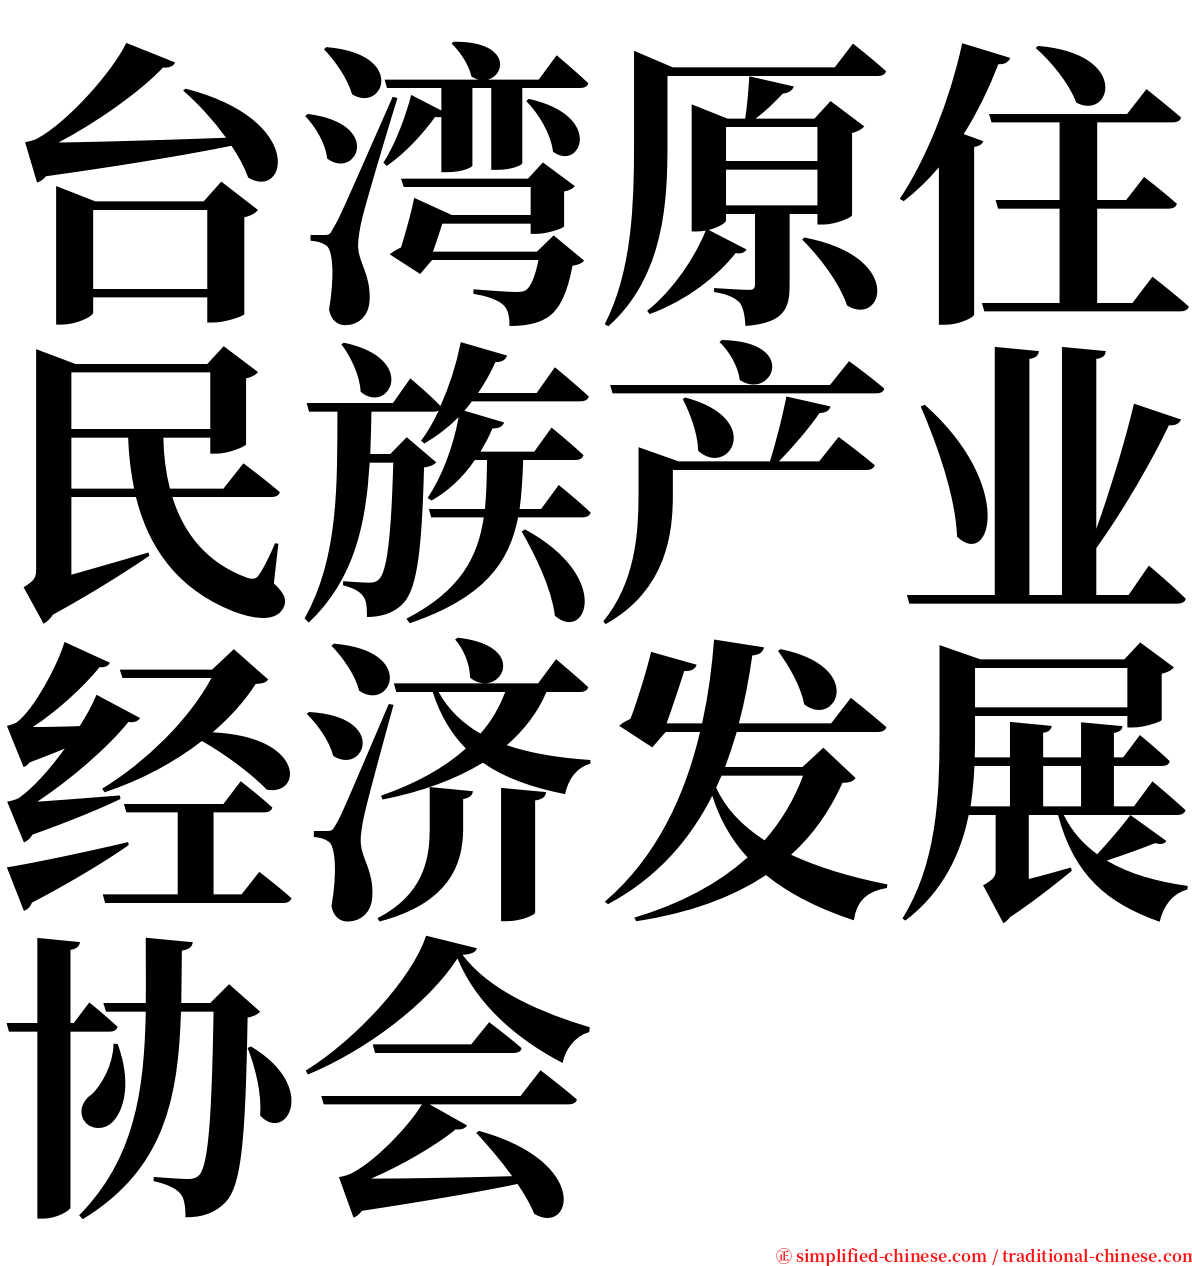 台湾原住民族产业经济发展协会 serif font